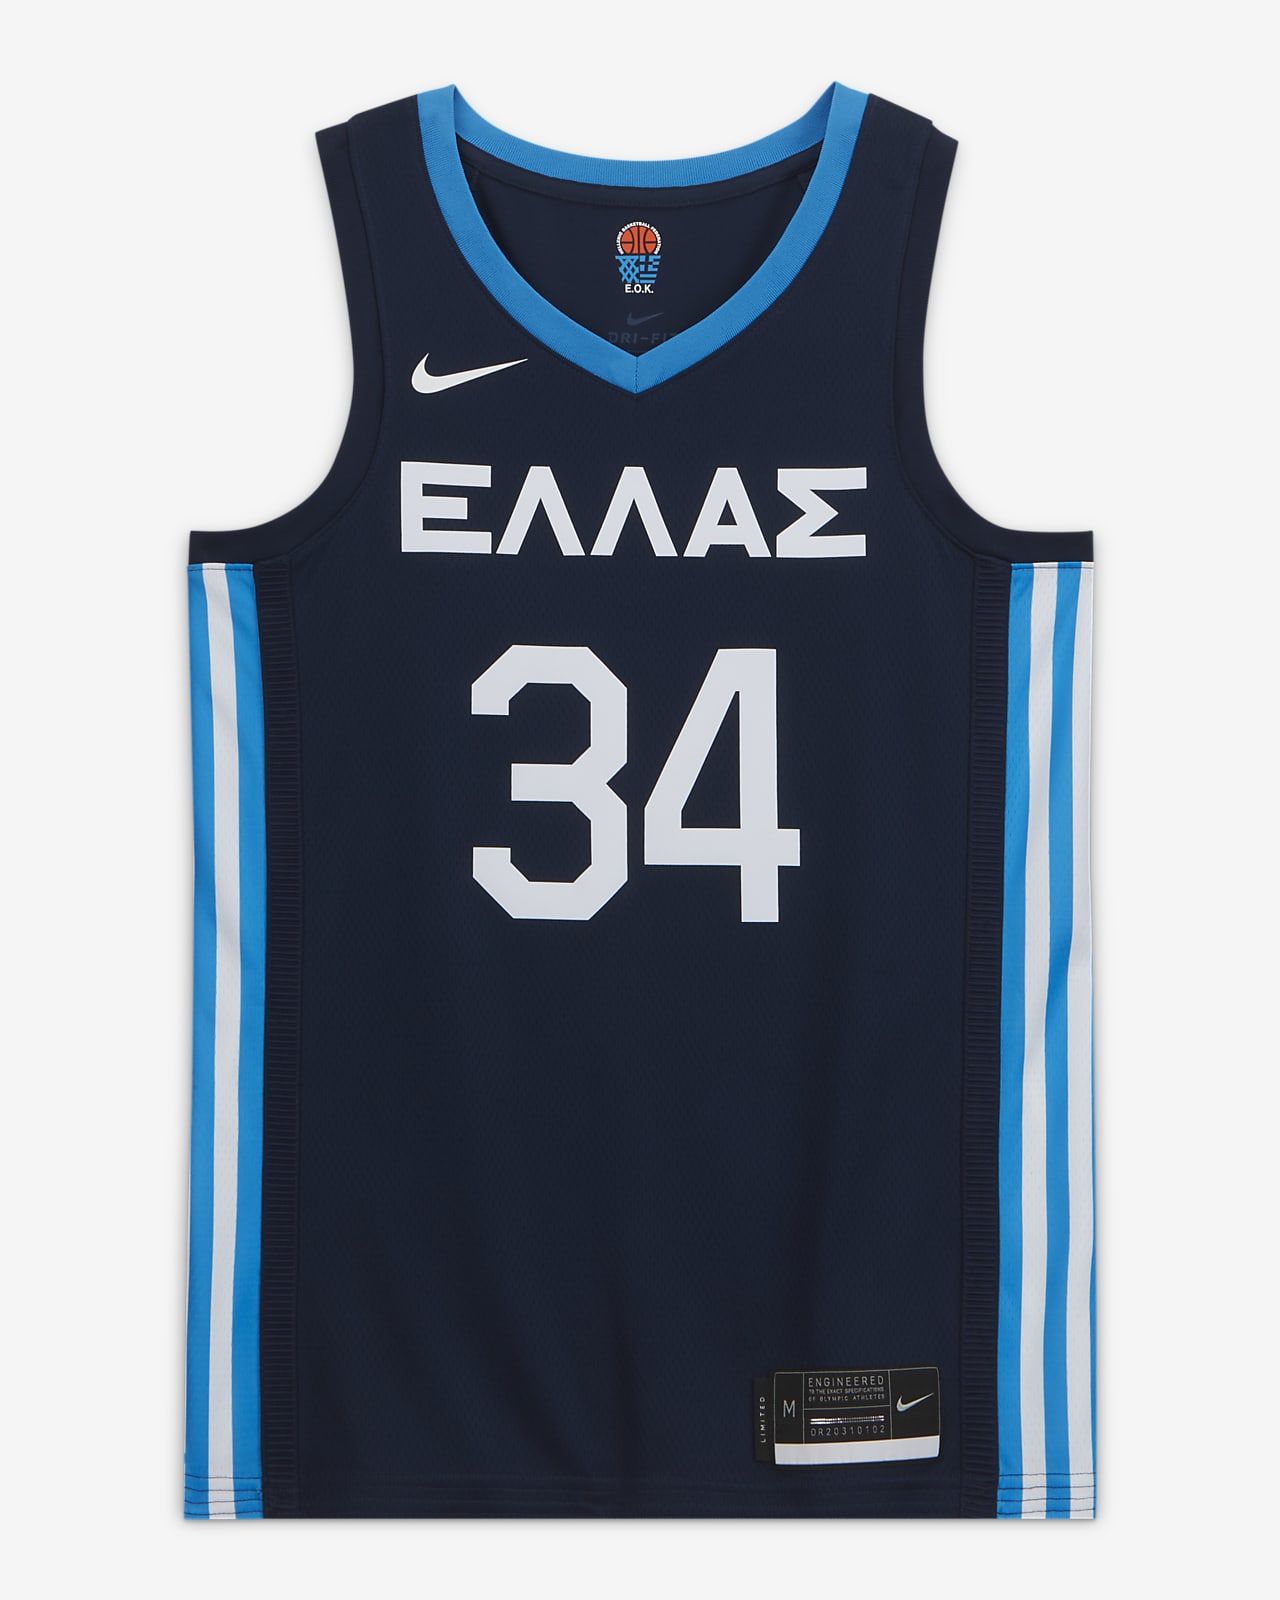 Ανδρική φανέλα μπάσκετ Ελλάδα (Road) Nike Limited